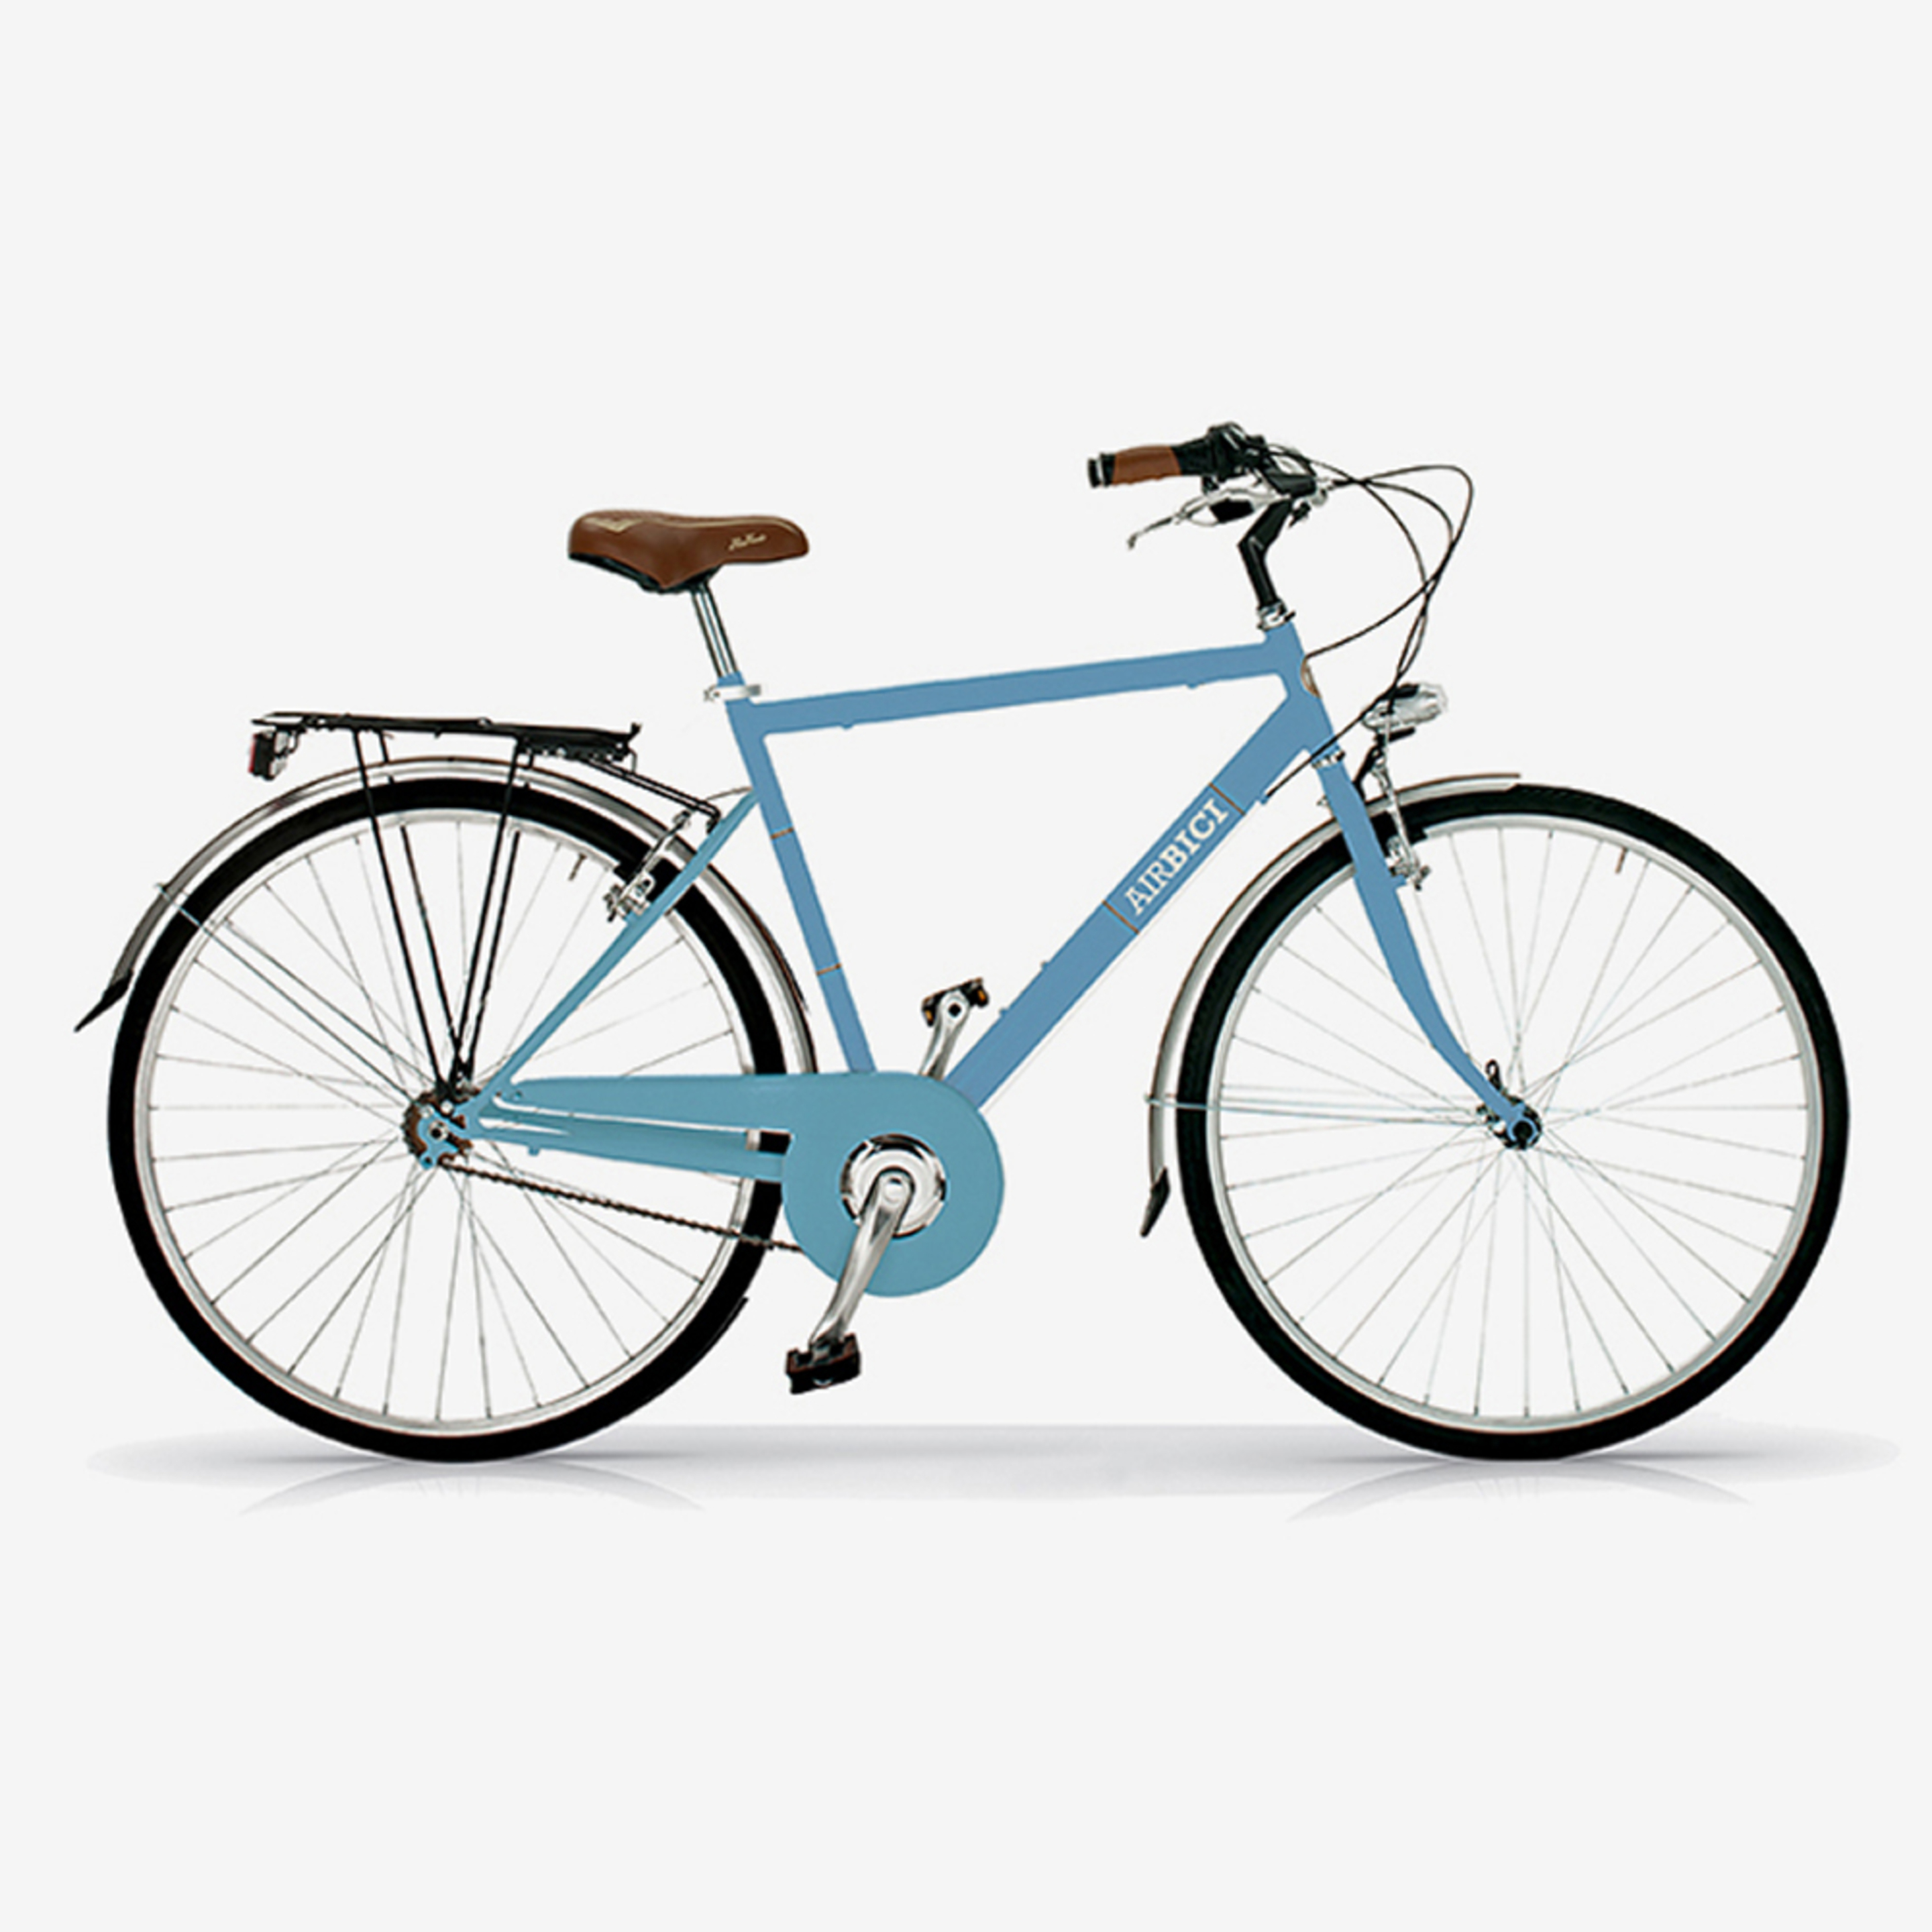 Bicicleta De Ciudad Airbici 605m Allure - Azul Cielo - Vintage, paseo, ciudad  MKP